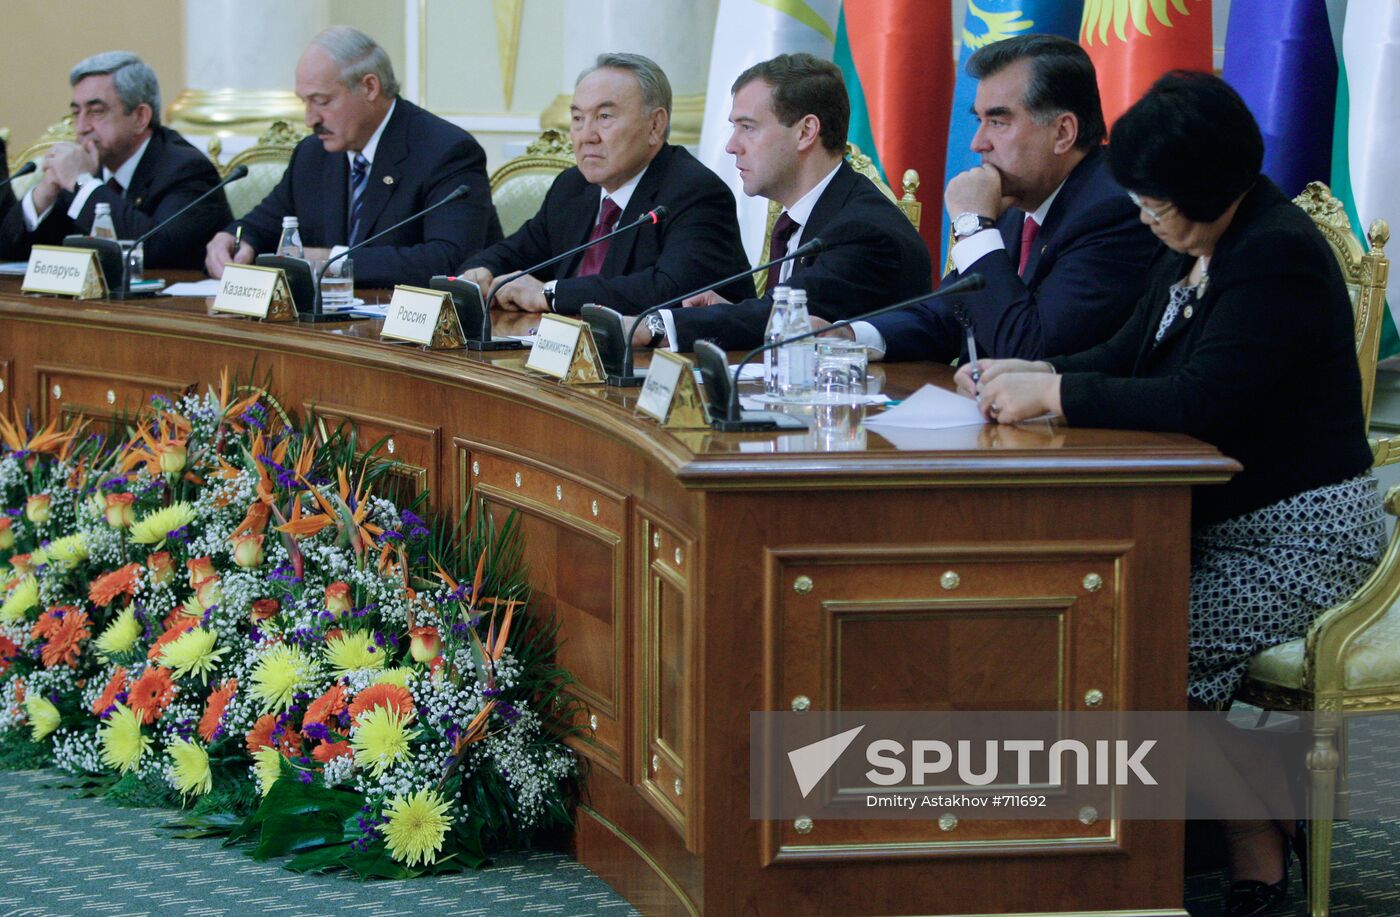 Dmitry Medvedev attends EurAsEC summit in Astana